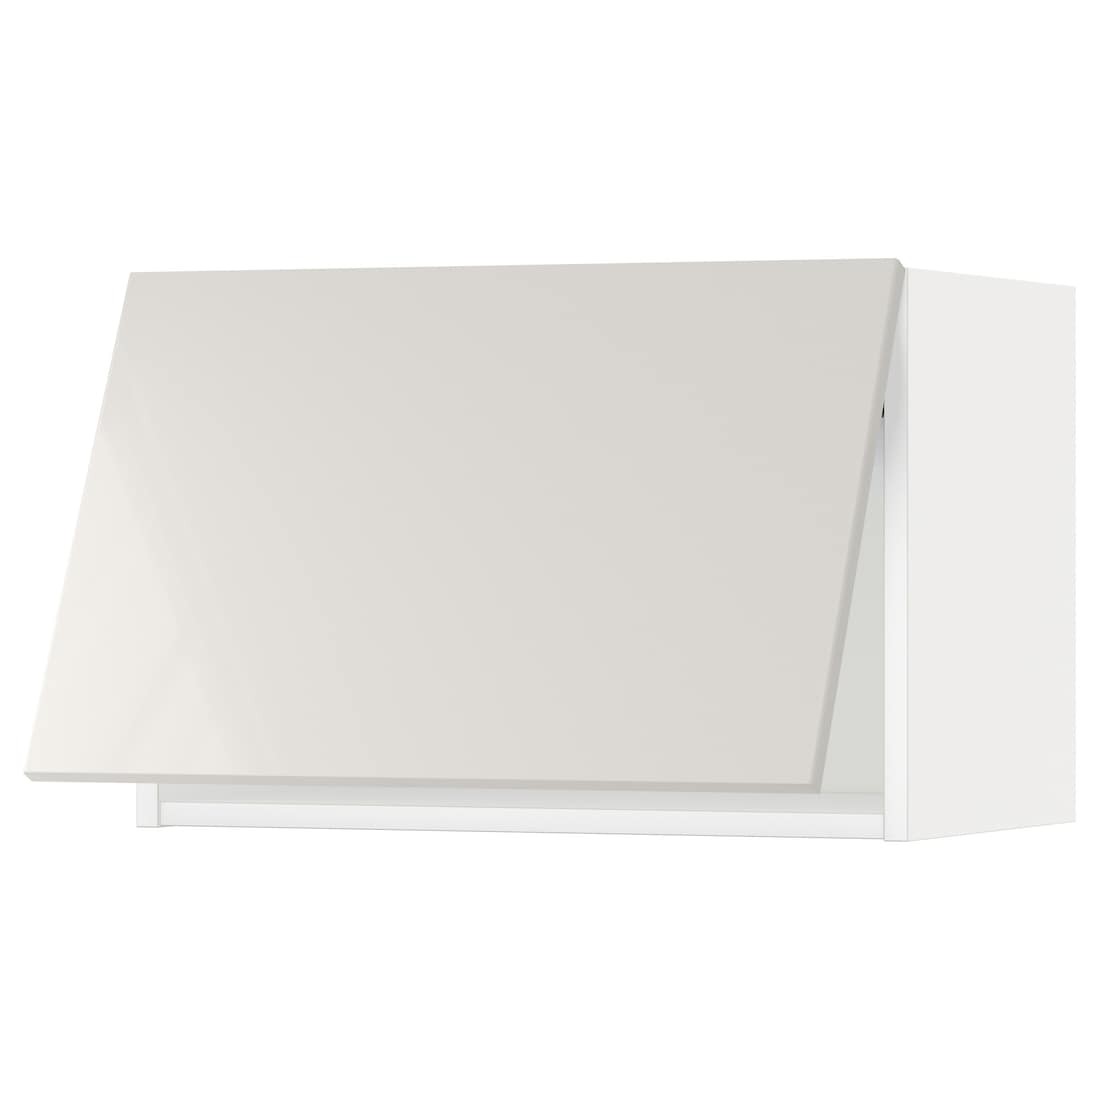 METOD МЕТОД Навесной горизонтальный шкаф, белый / Ringhult светло-серый, 60x40 см